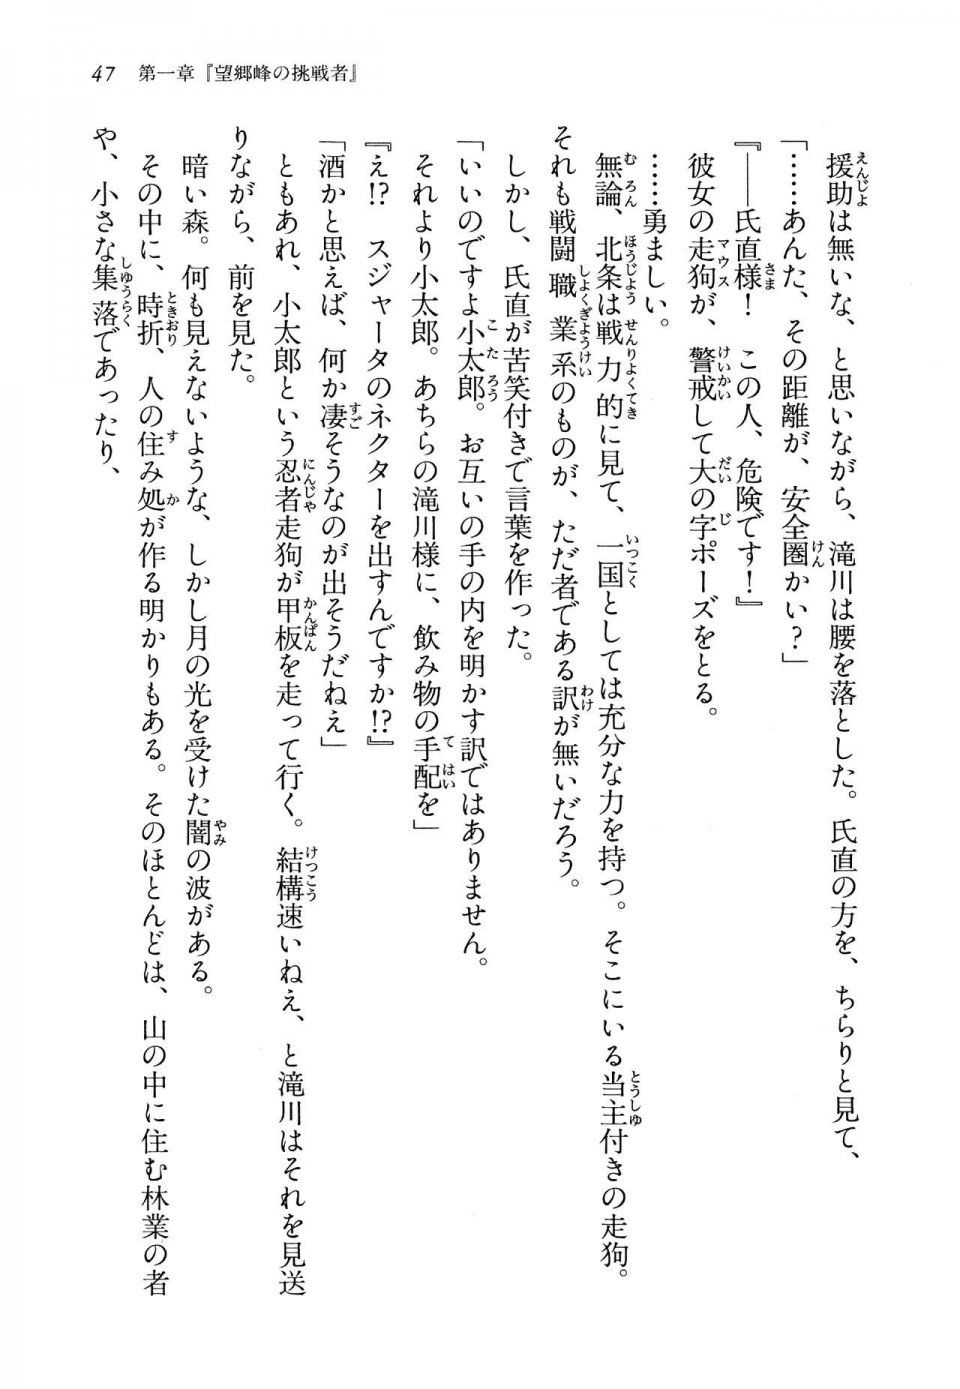 Kyoukai Senjou no Horizon LN Vol 13(6A) - Photo #47